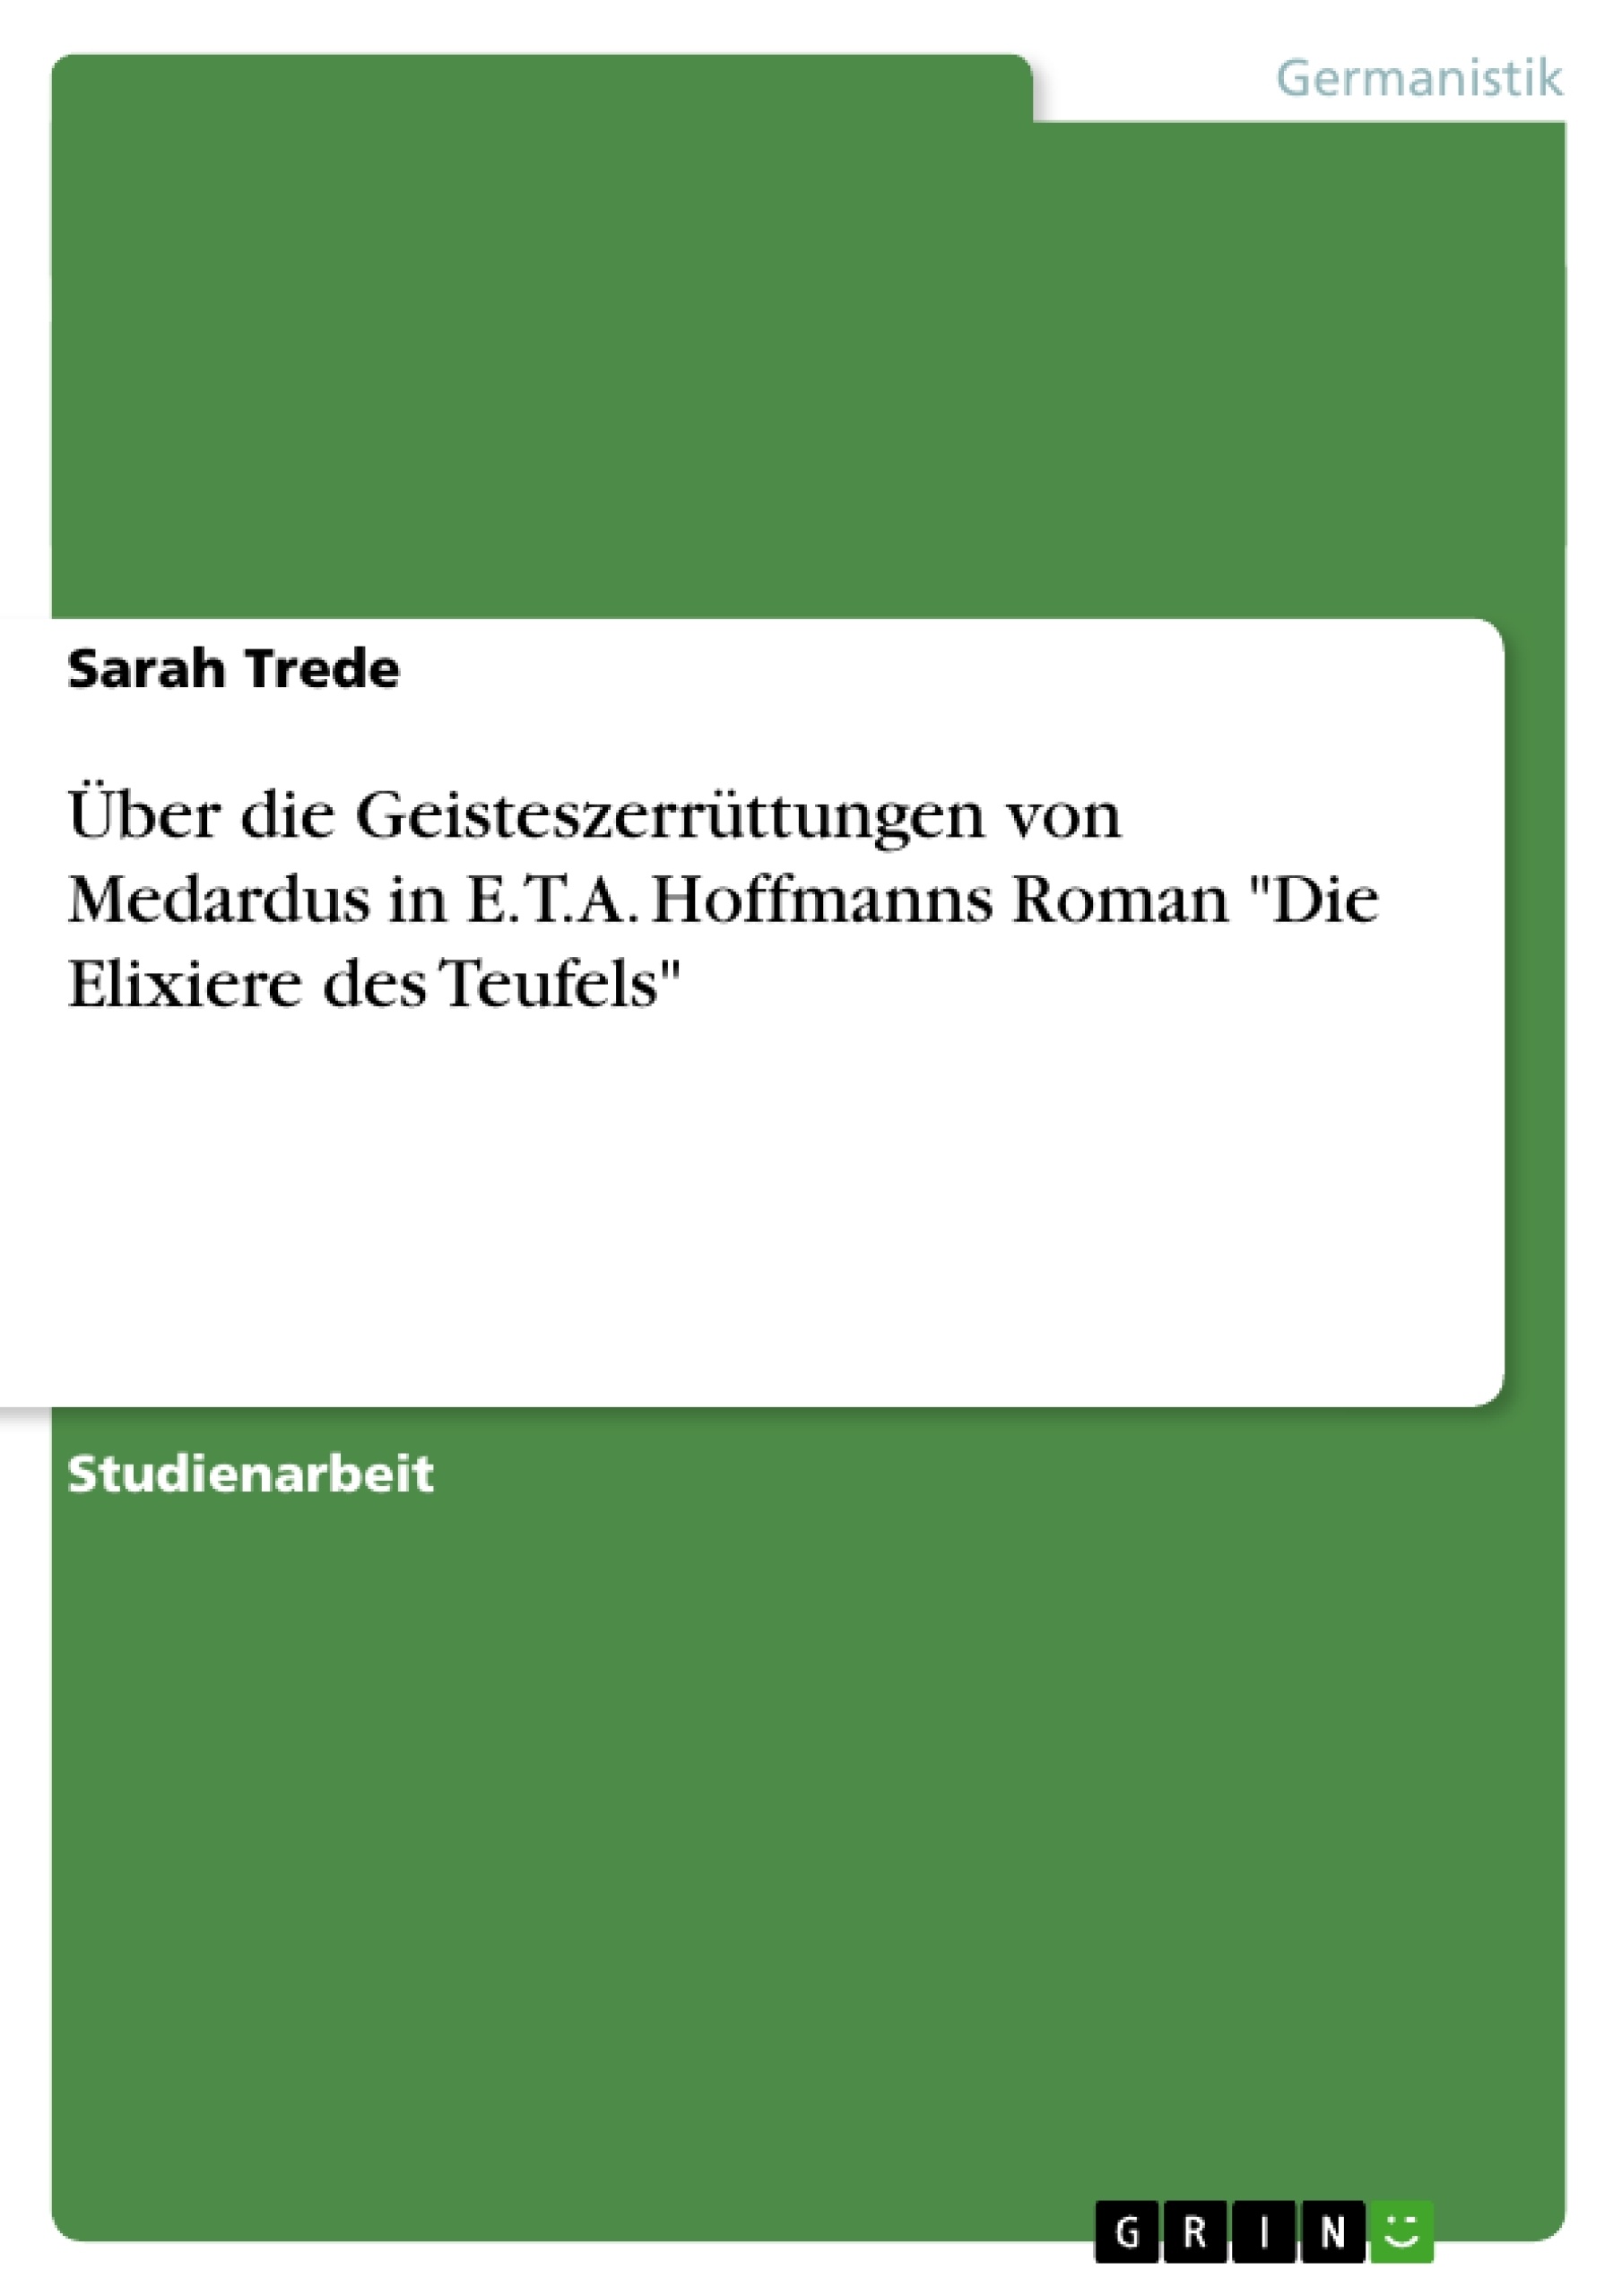 Title: Über die Geisteszerrüttungen von Medardus in E.T.A. Hoffmanns Roman "Die Elixiere des Teufels"